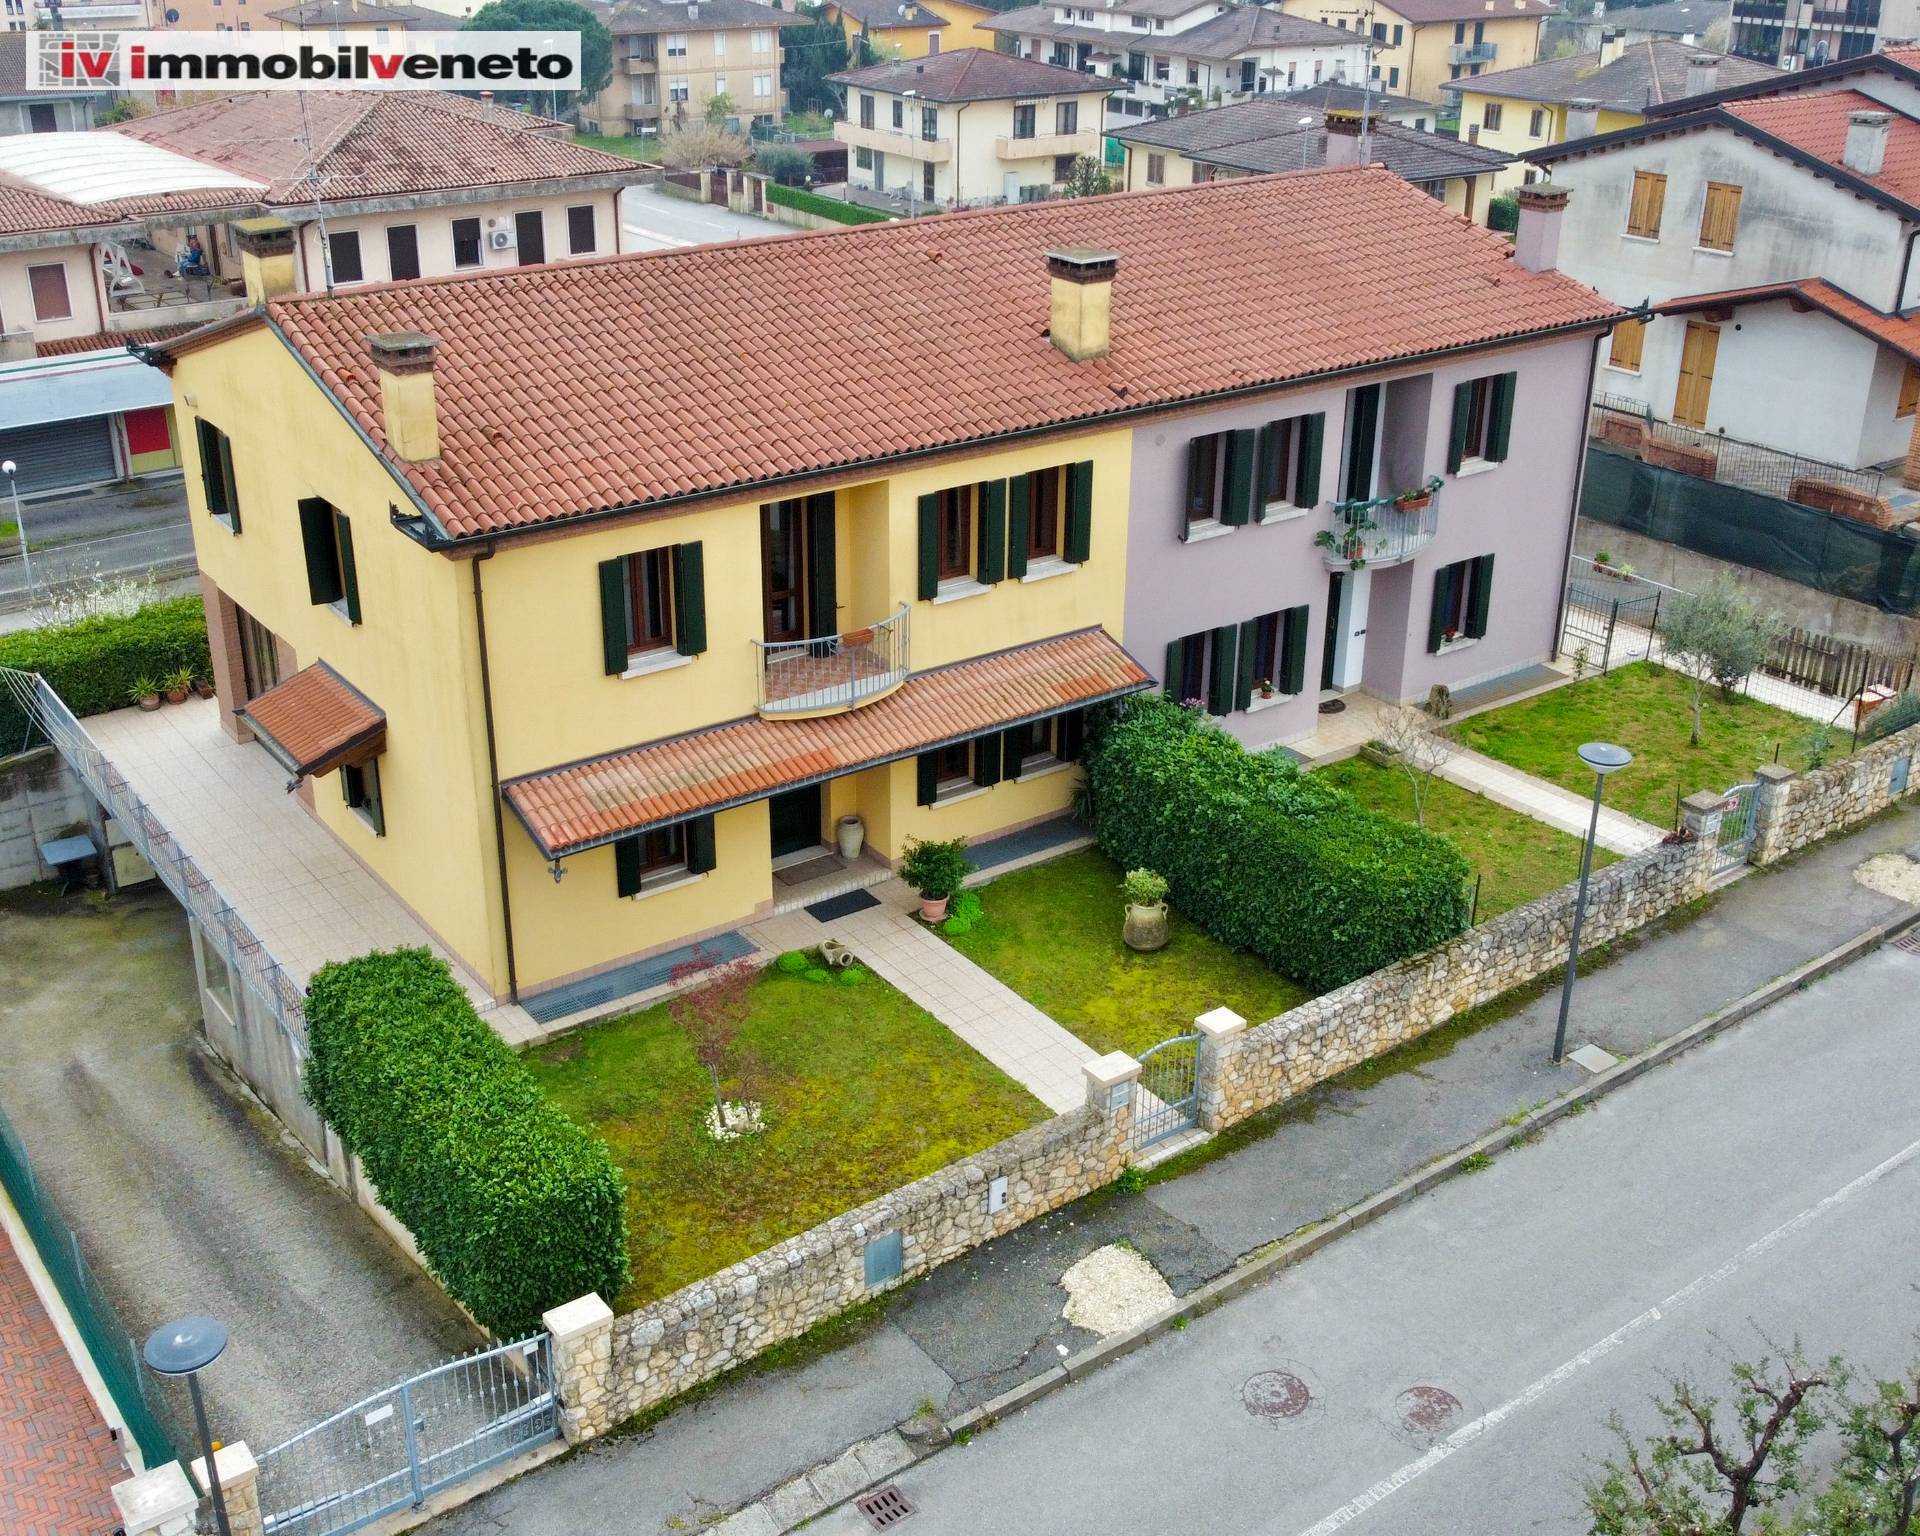 Villa Bifamiliare in vendita a Orgiano, 8 locali, prezzo € 265.000 | PortaleAgenzieImmobiliari.it